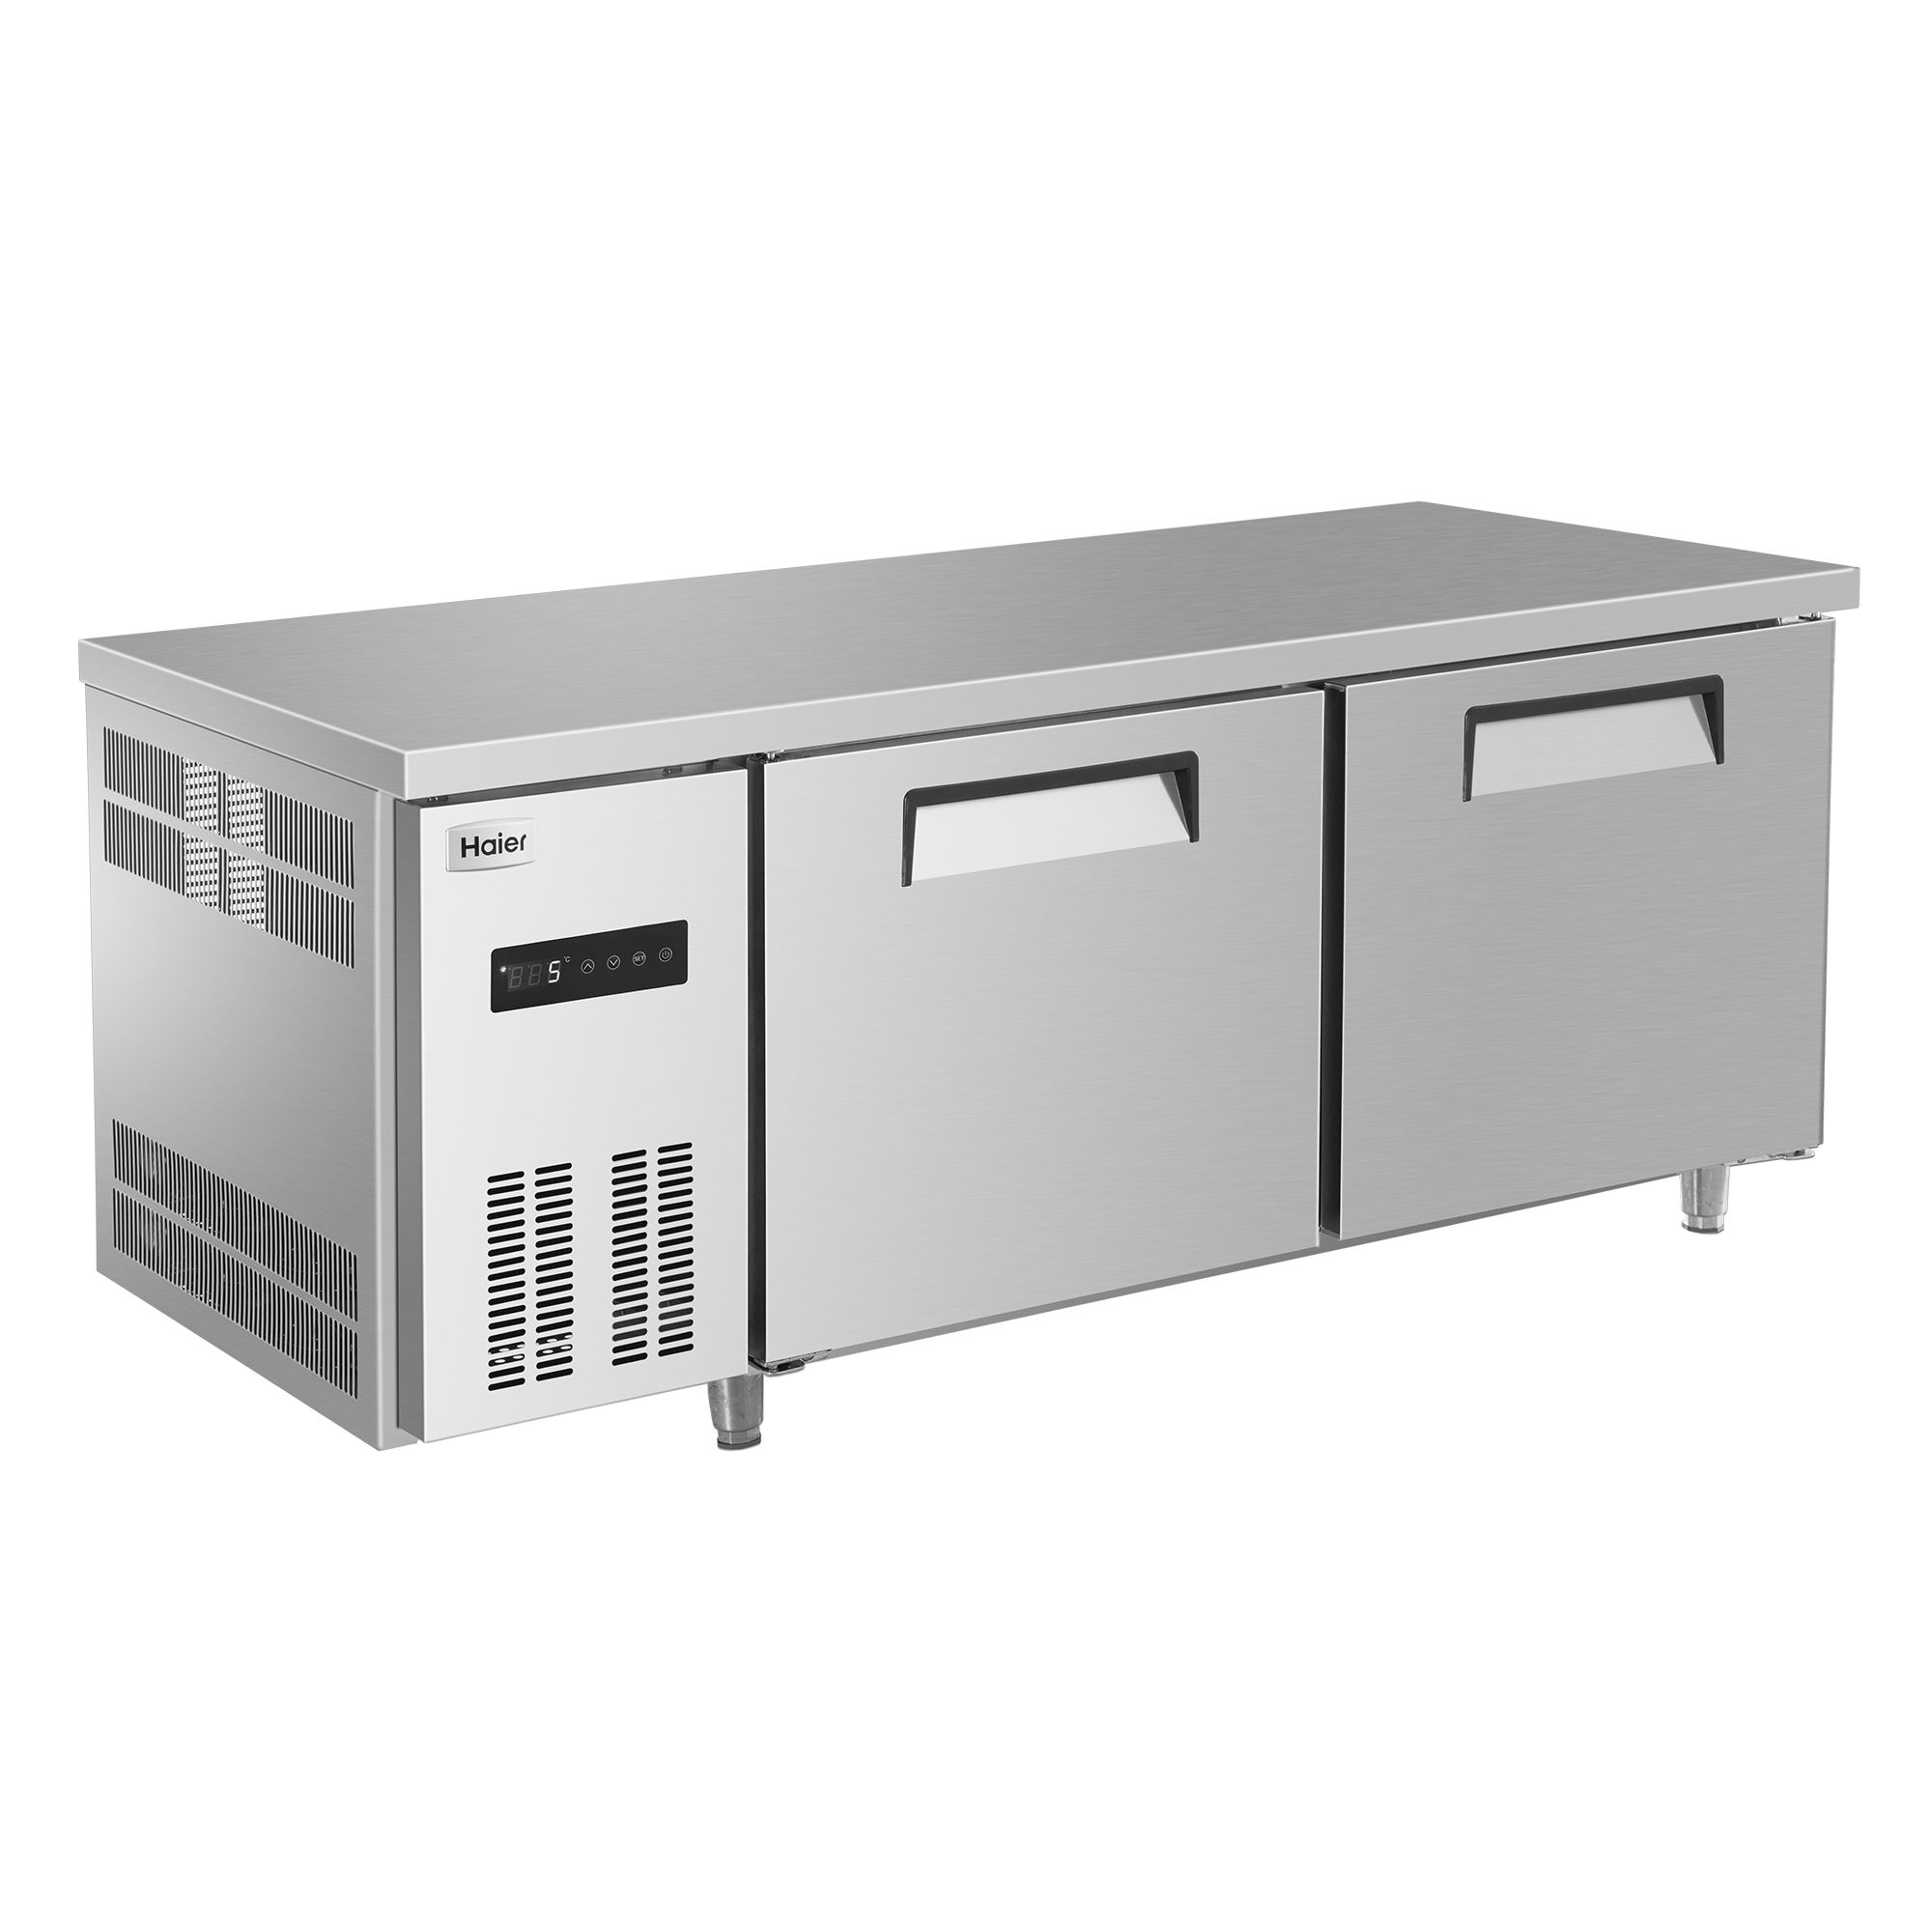 冷藏柜/双门冰柜/冷藏工作台产品图